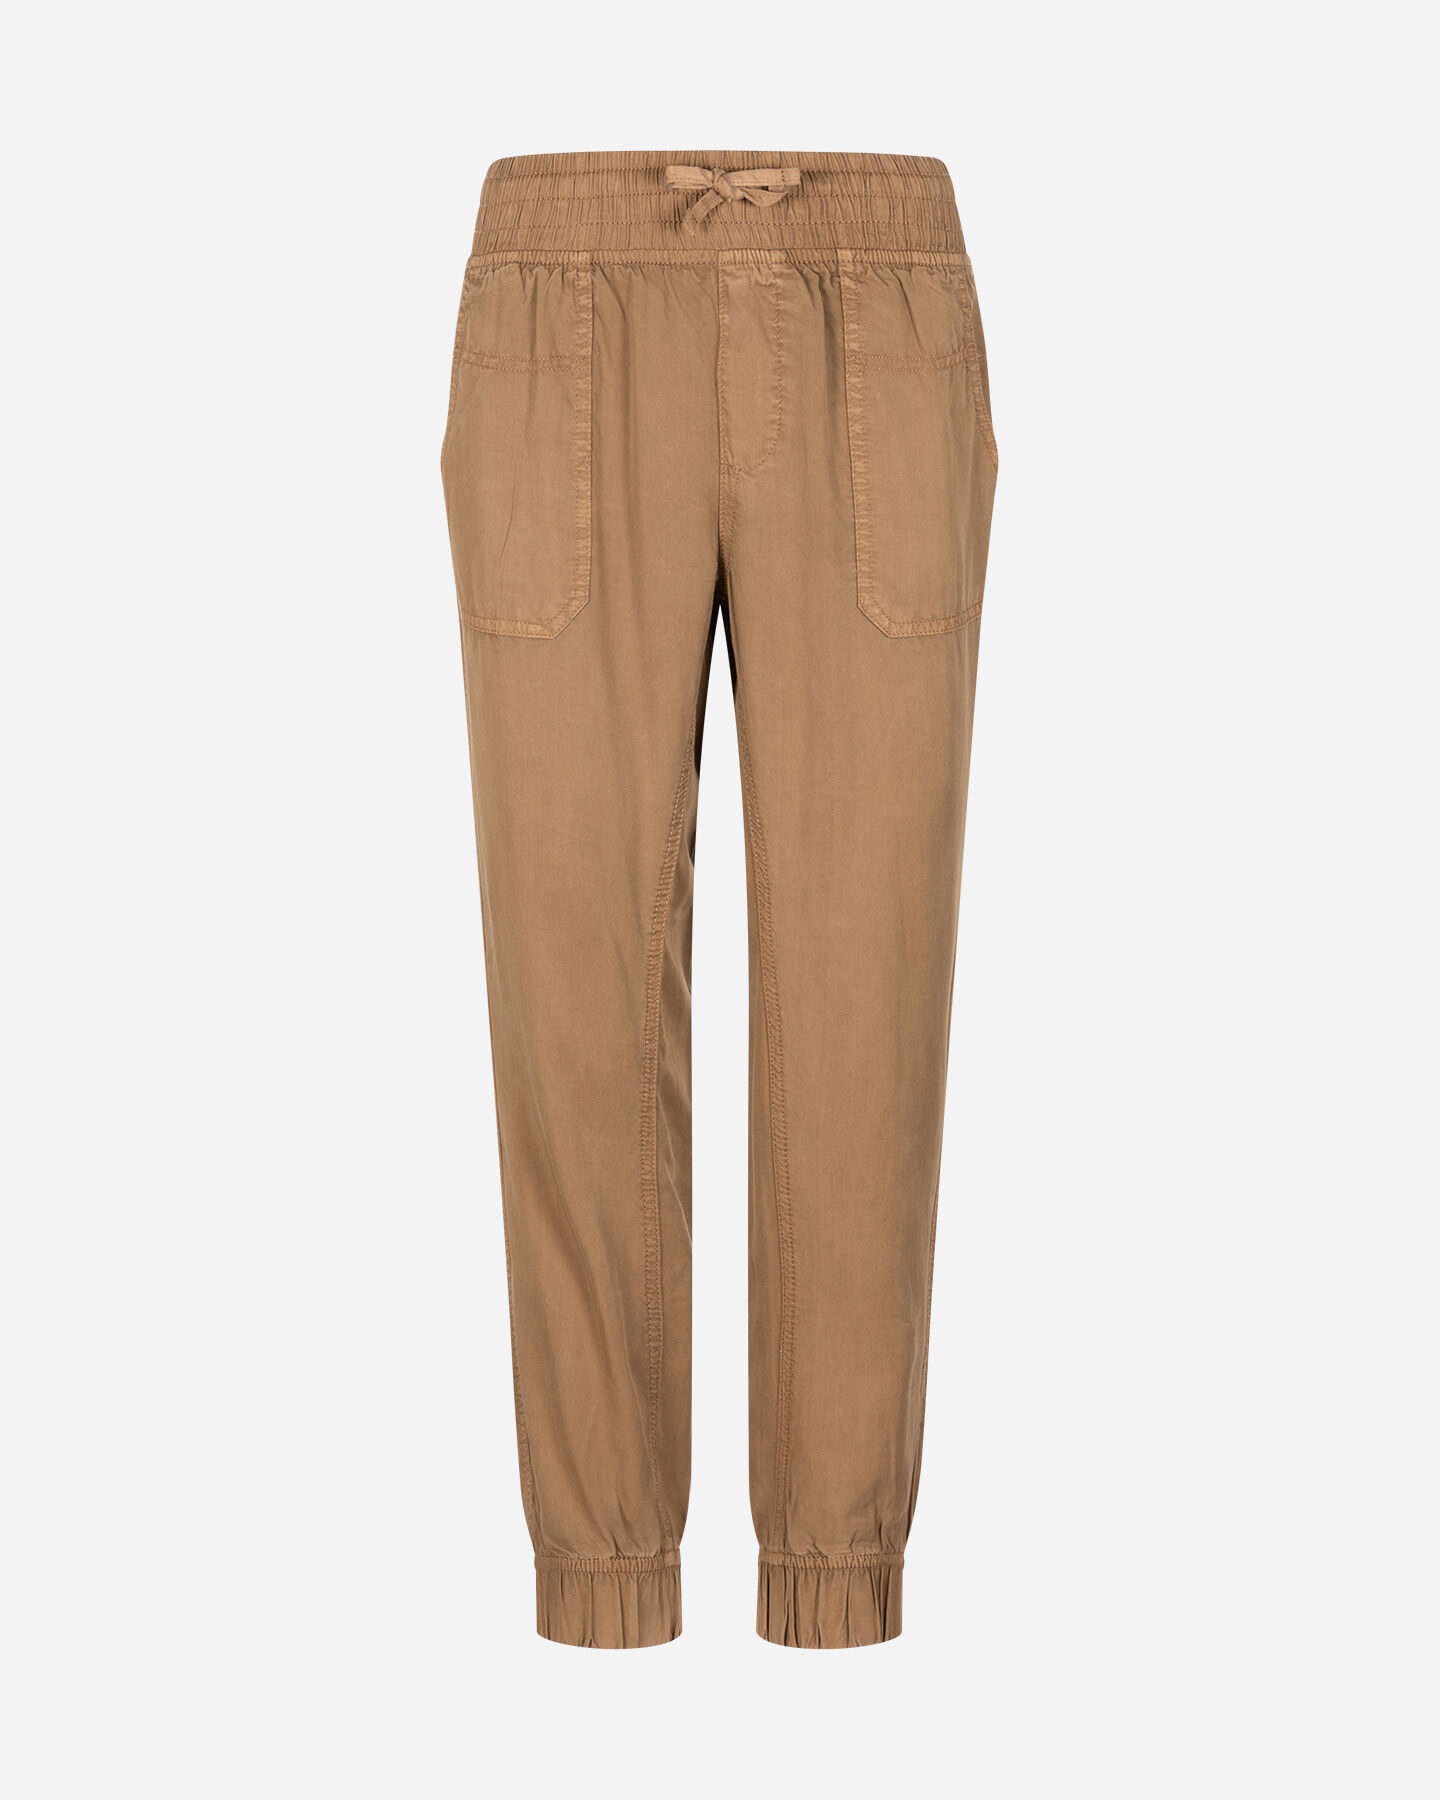  Pantalone MISTRAL ESSENTIAL W S4130008|123|XS scatto 0